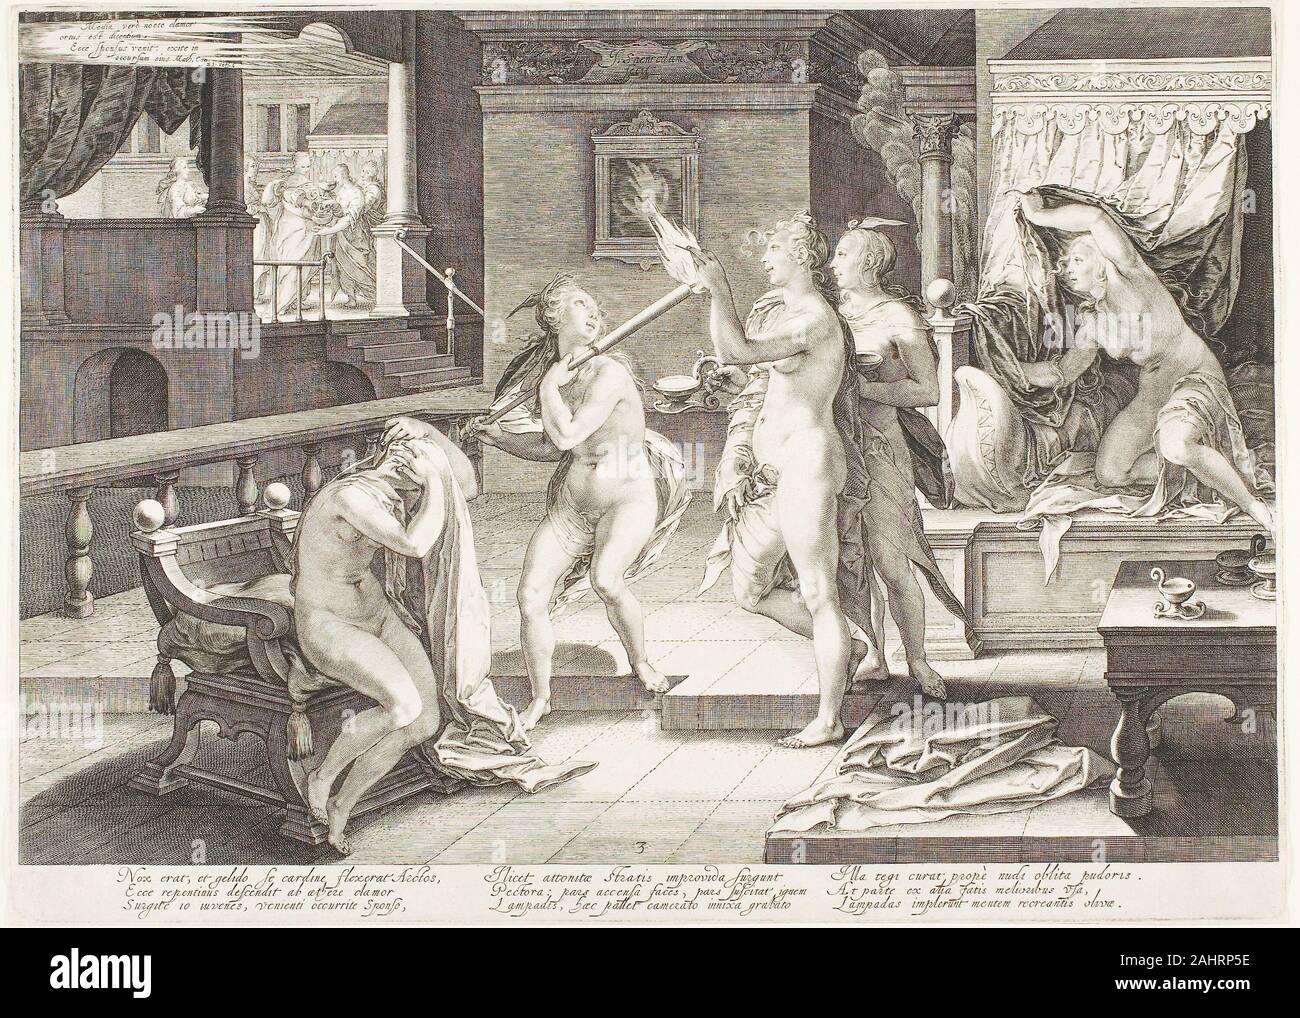 Jan Saenredam. Platte drei von fünf klugen und fünf dummen Jungfrauen. 1606. Niederlande. Gravur auf Papier Stockfoto